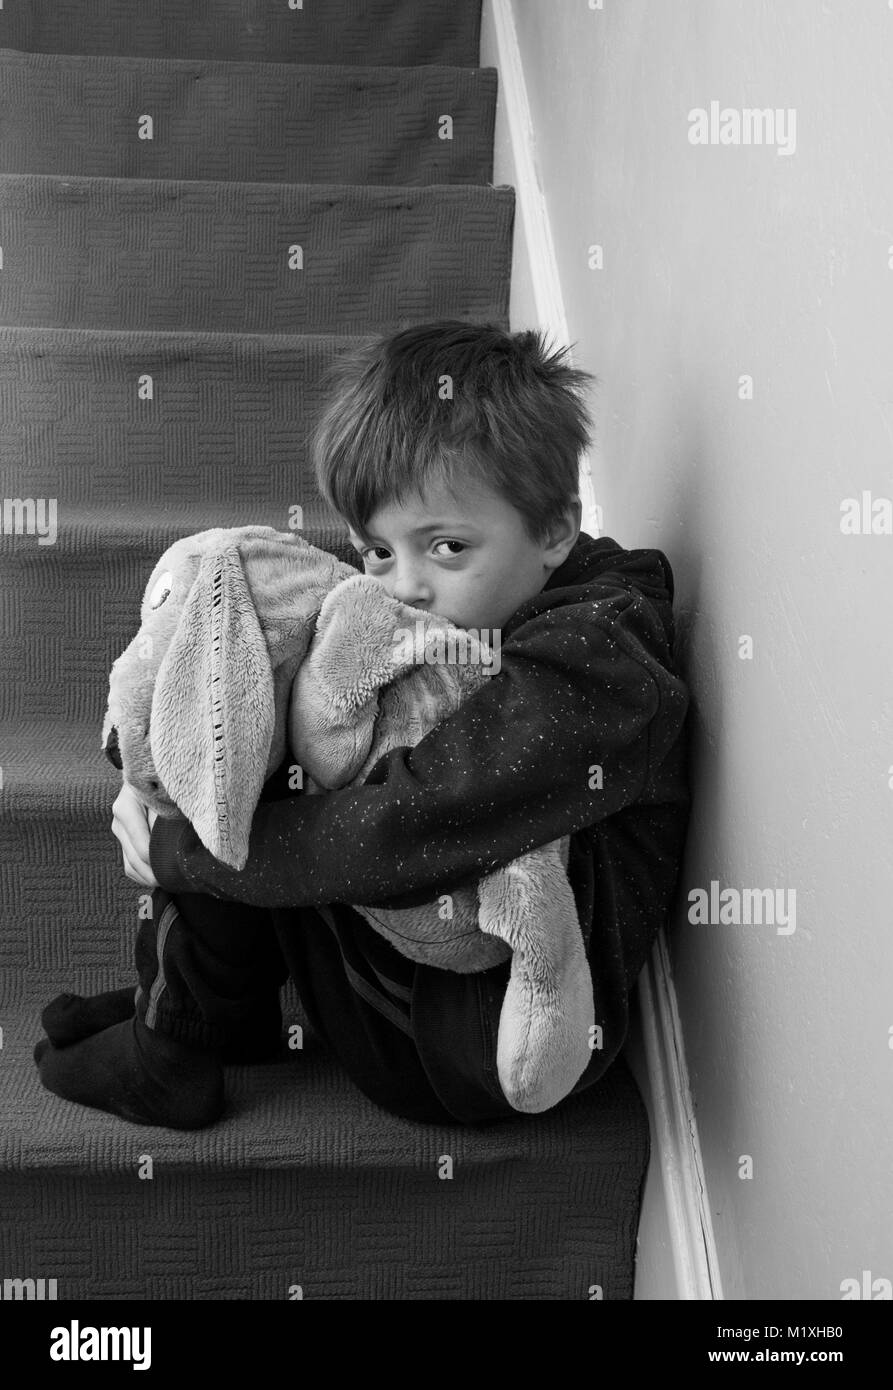 Um einen Eindruck von einem einsamen Kind in Schwarz und Weiß. Stockfoto